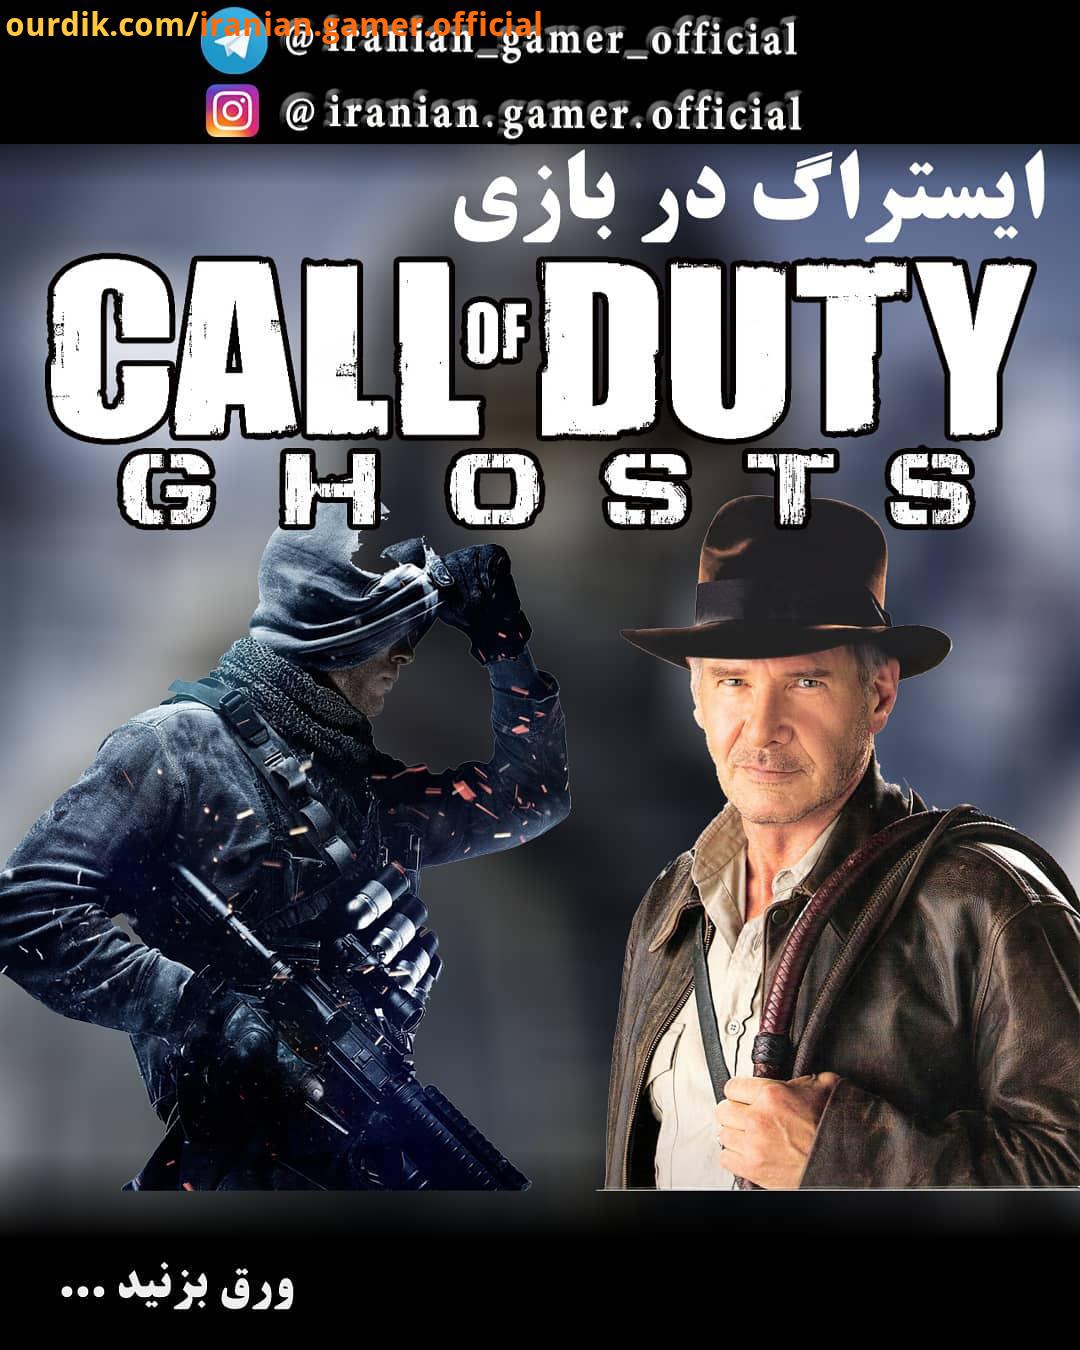 ایستراگ رفرنس در بازی Call of Duty: Ghosts ندای وظیفه: ارواح یک بازی تیراندازی : iranian gamer off